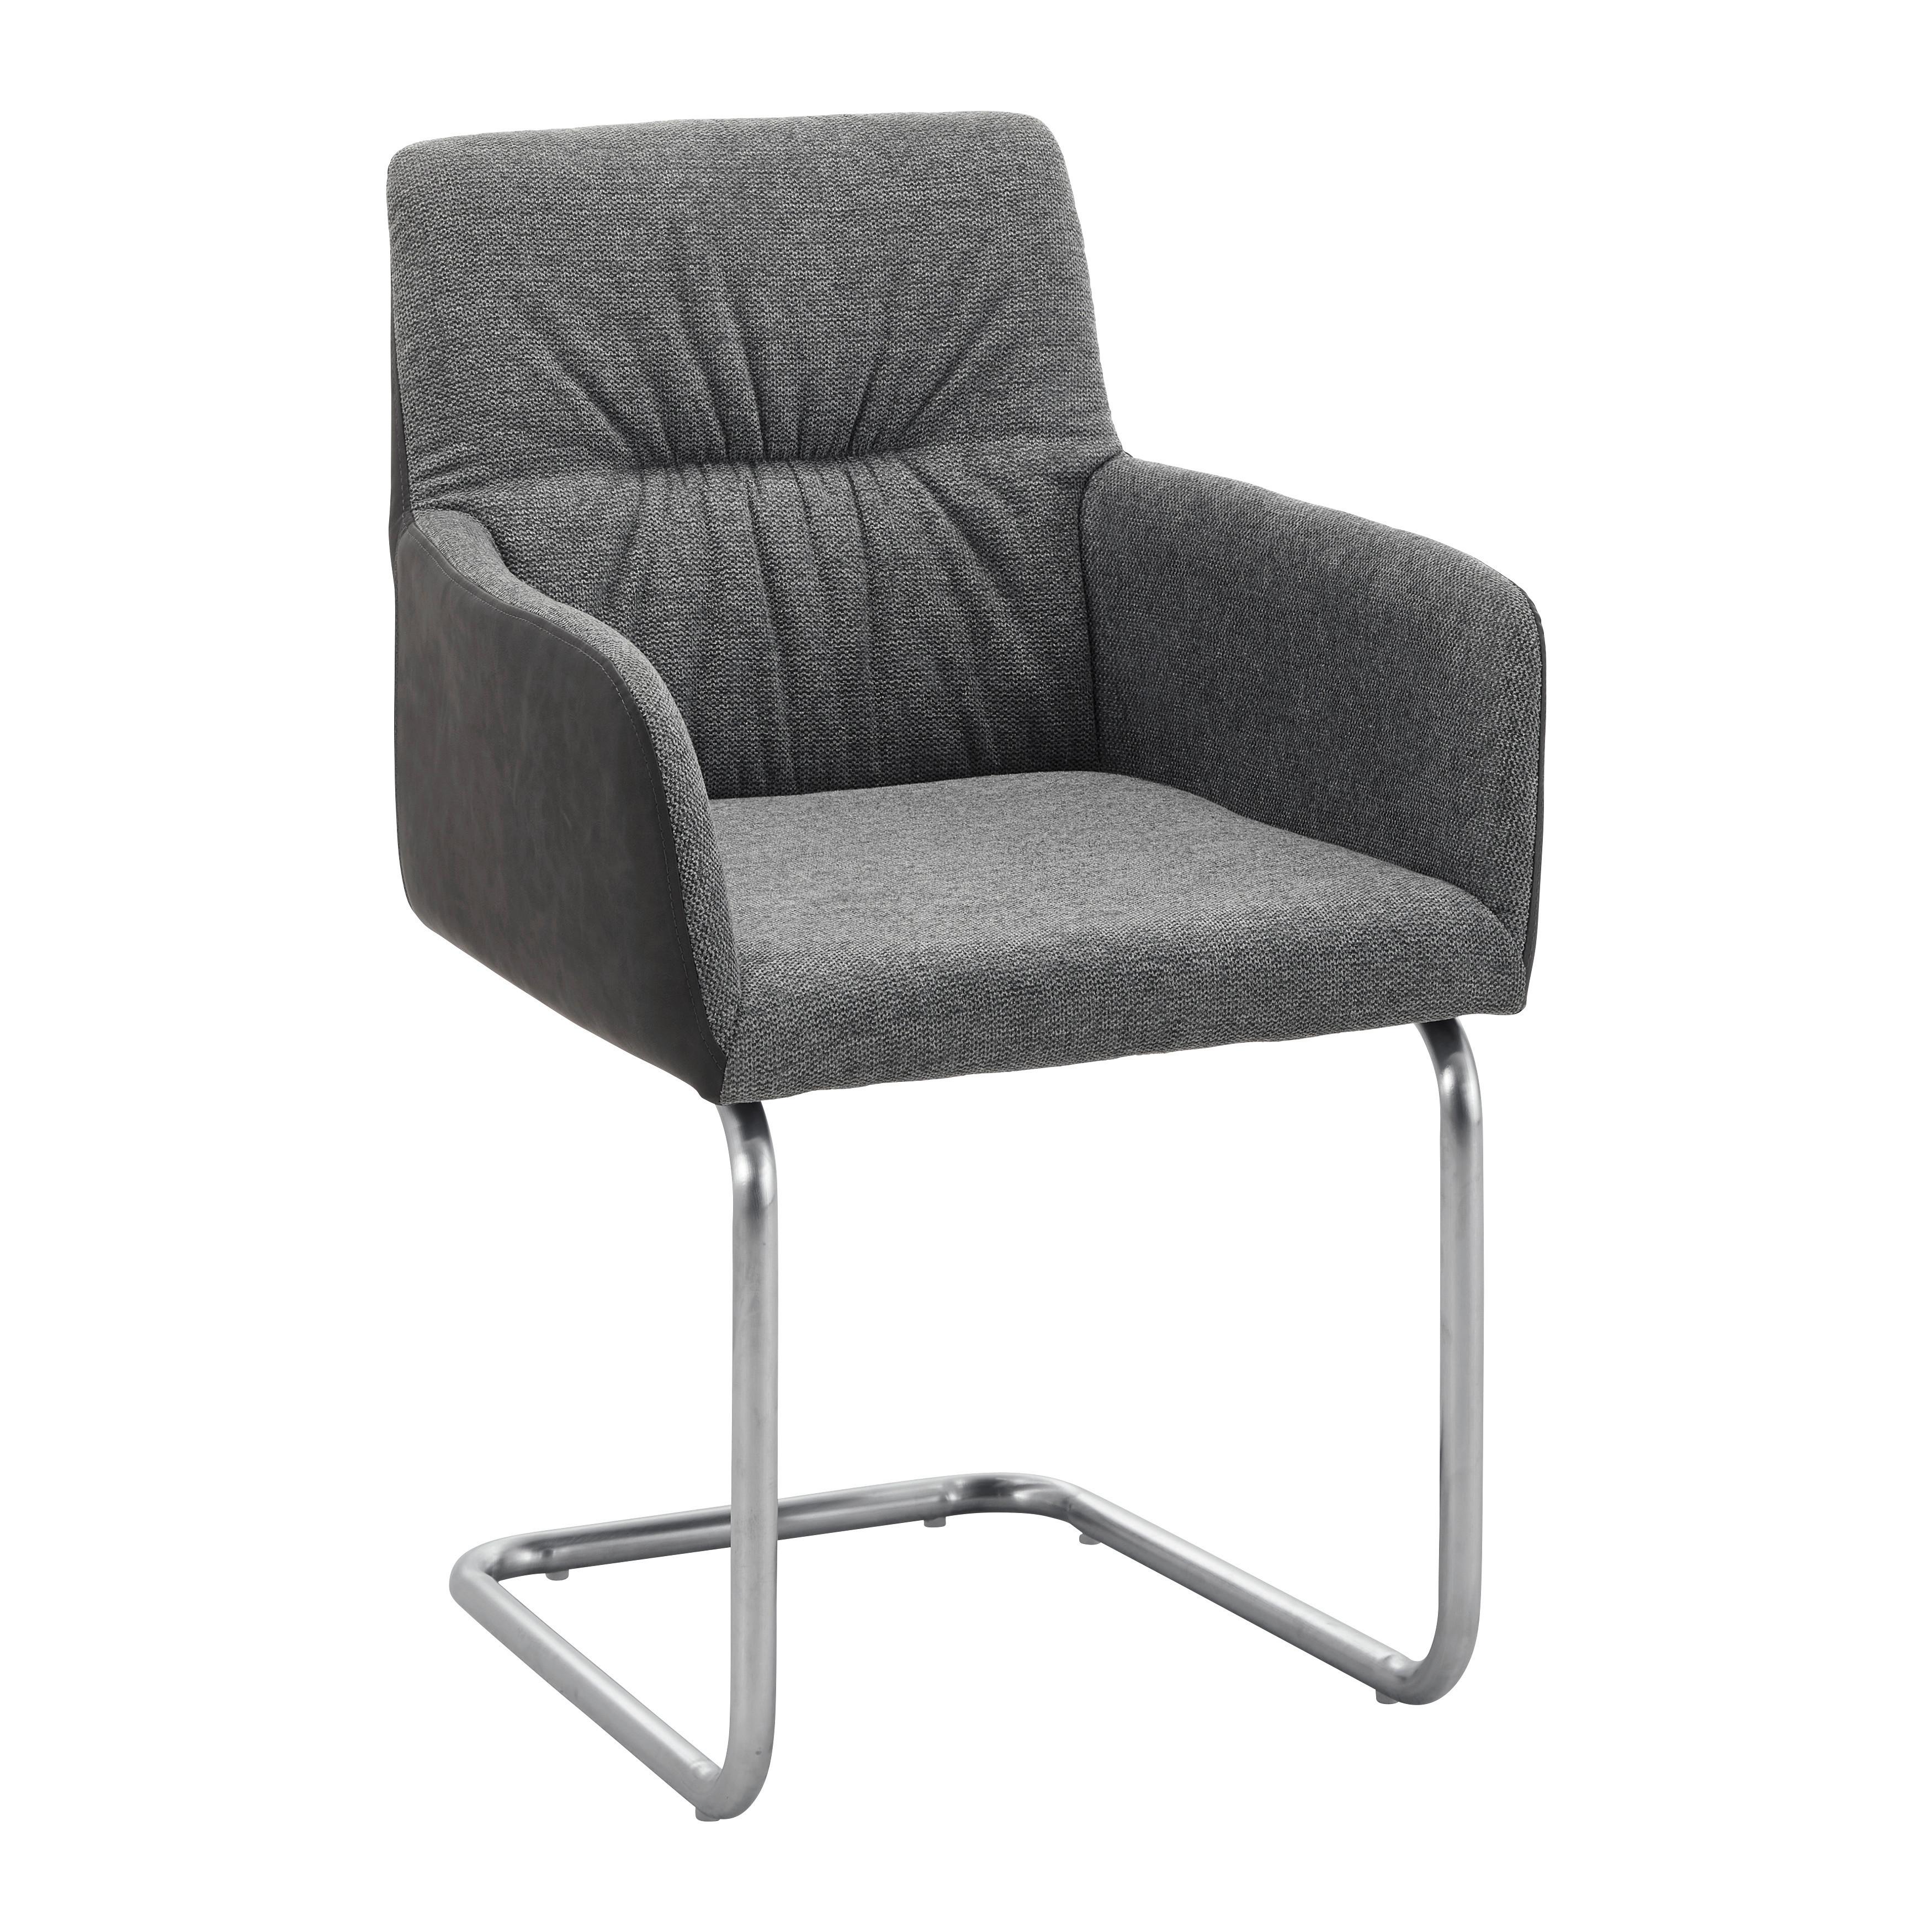 Houpací Židle Enja Tmavěšedá - tmavě šedá/barvy nerez oceli, Moderní, kov/dřevo (56/86/62cm) - Bessagi Home